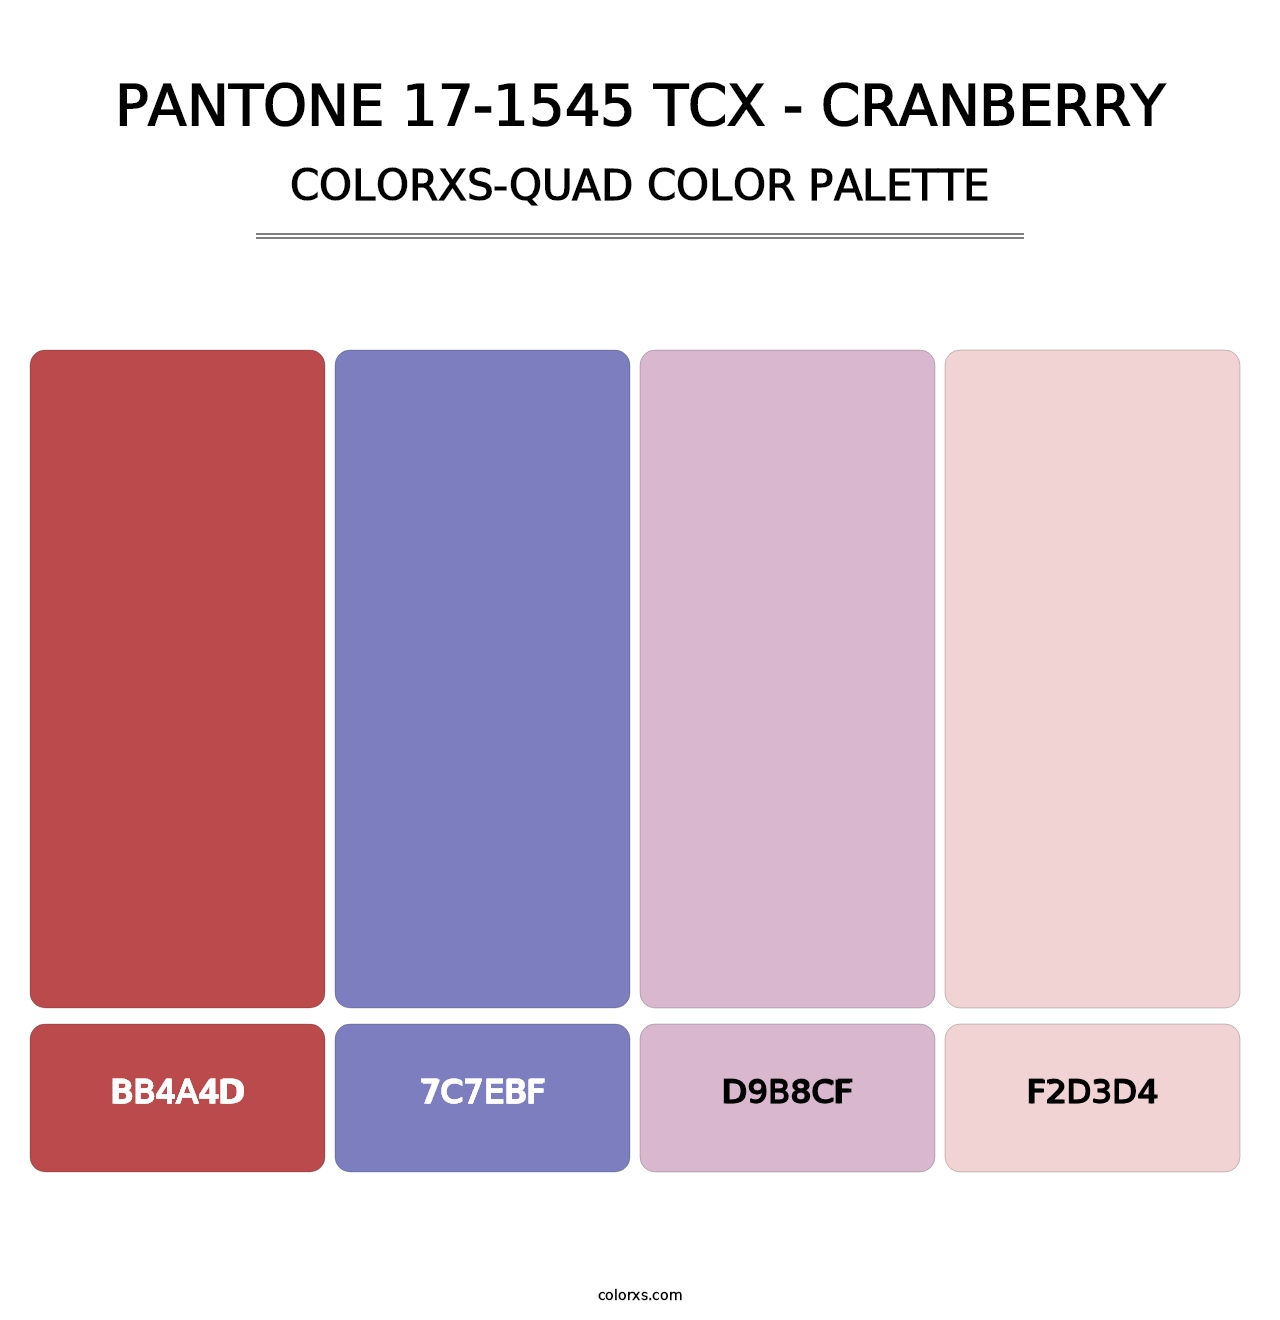 PANTONE 17-1545 TCX - Cranberry - Colorxs Quad Palette